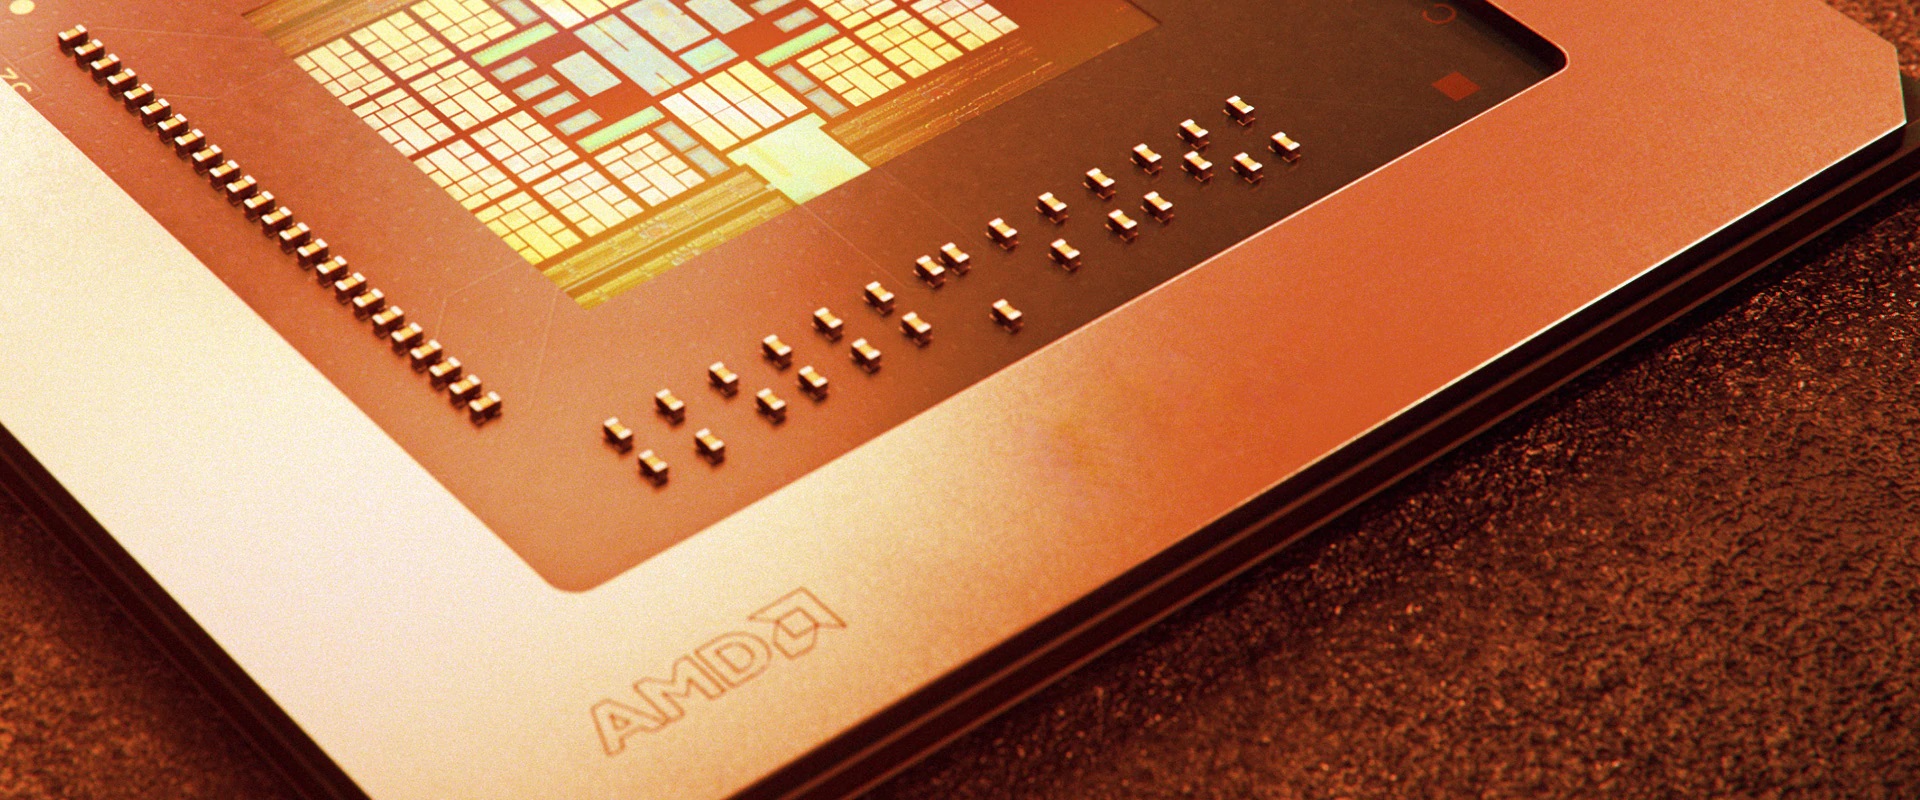 Le futur chipset X670 d'AMD pourrait être difficile à intégrer en Mini-ITX